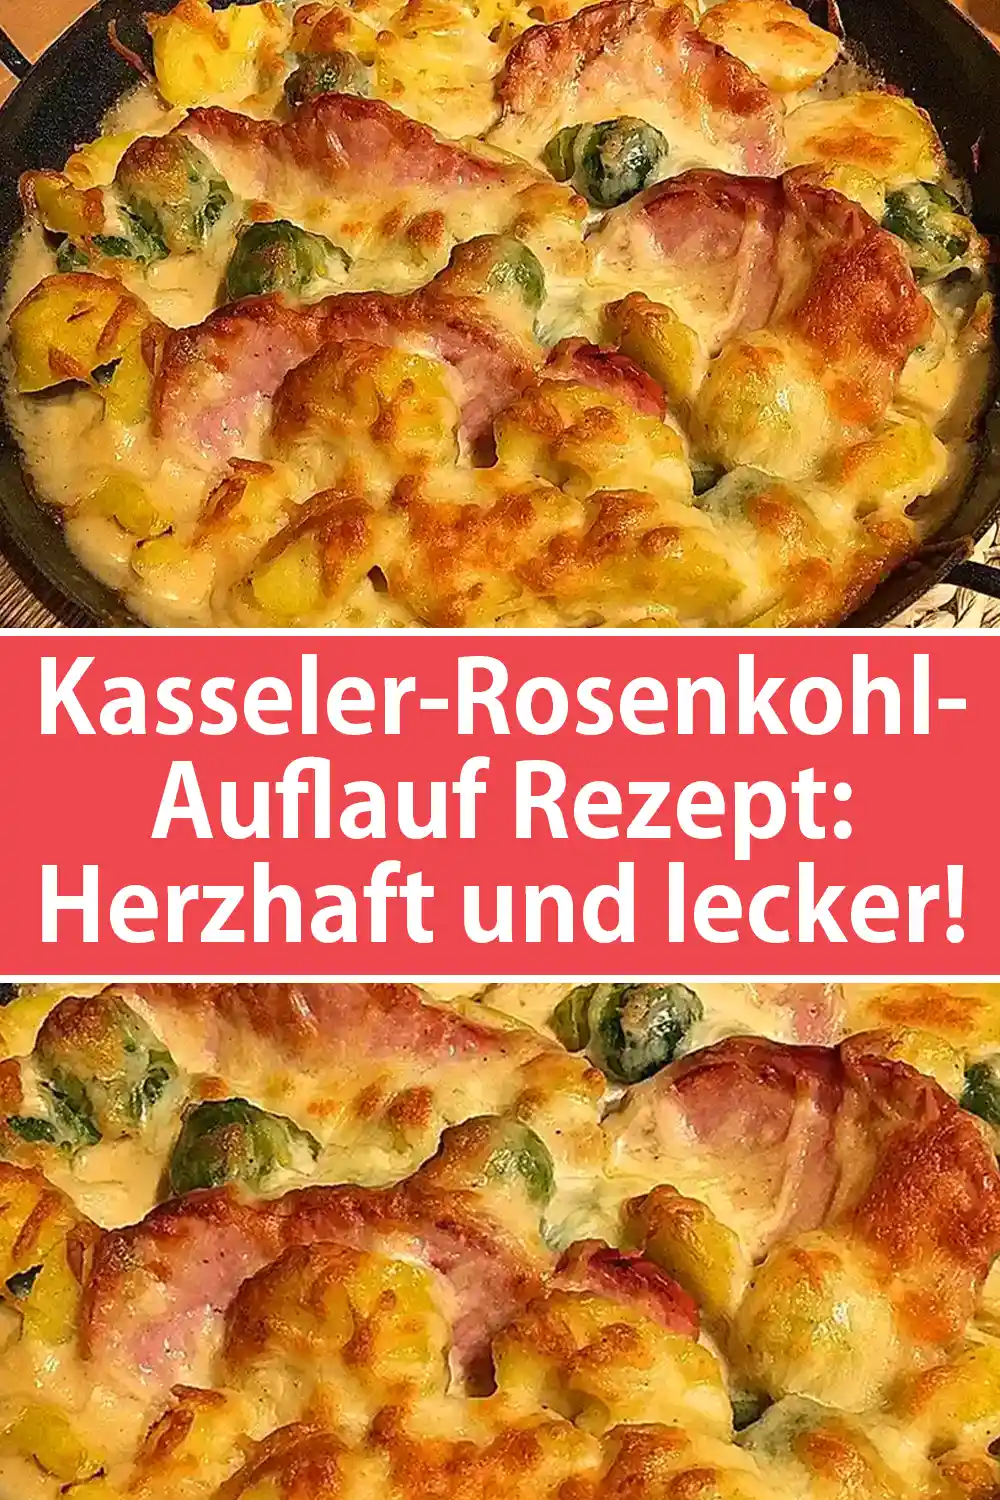 Kasseler-Rosenkohl-Auflauf Rezept: Herzhaft und lecker!